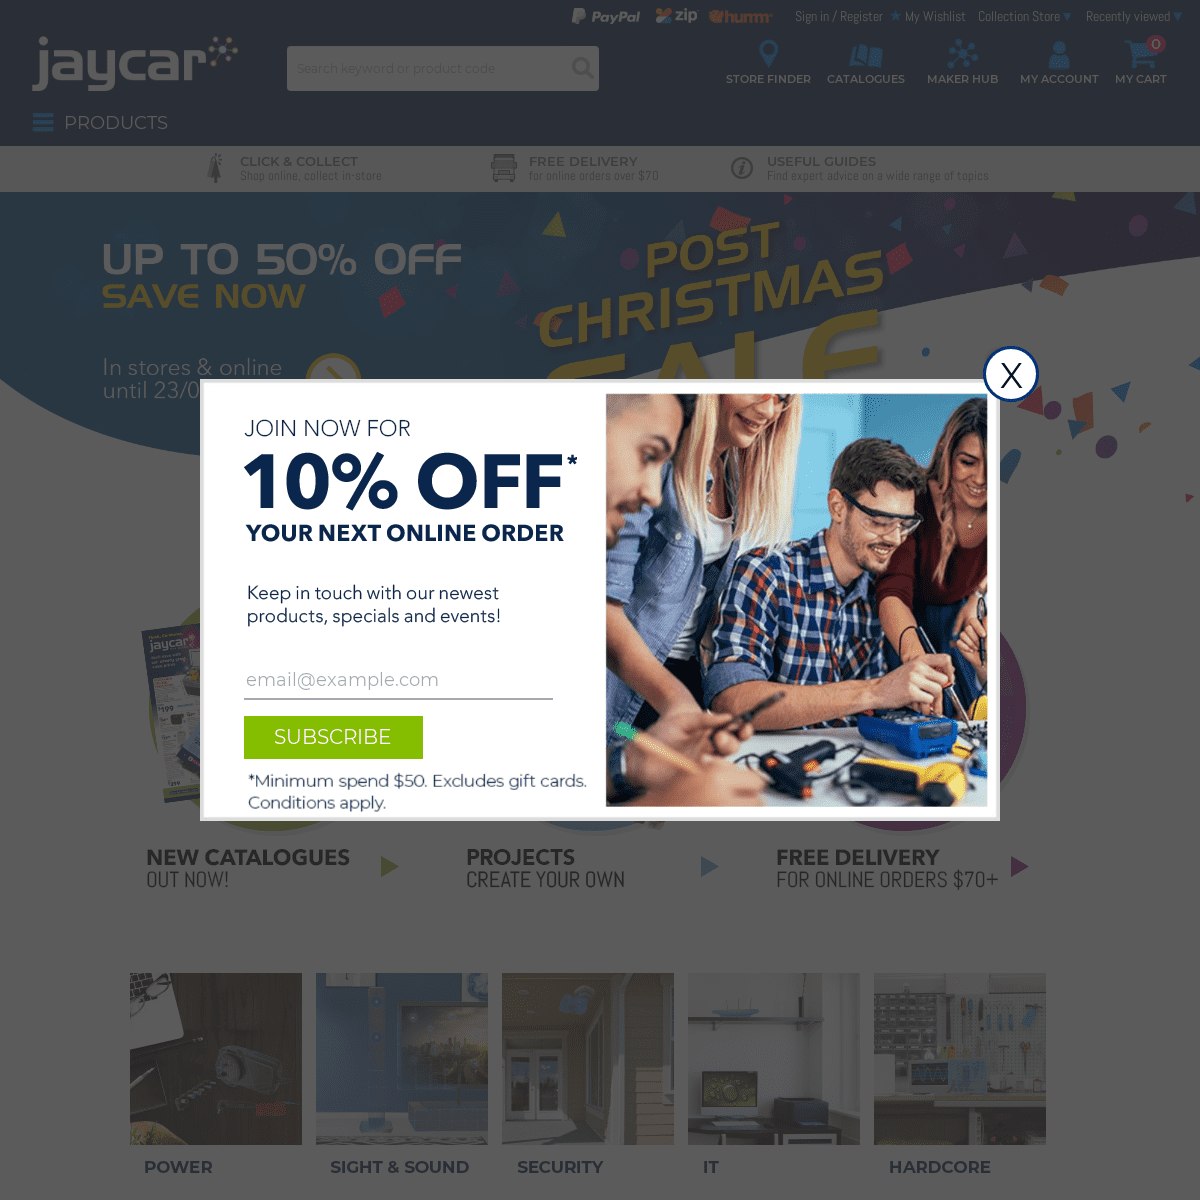 A complete backup of jaycar.com.au